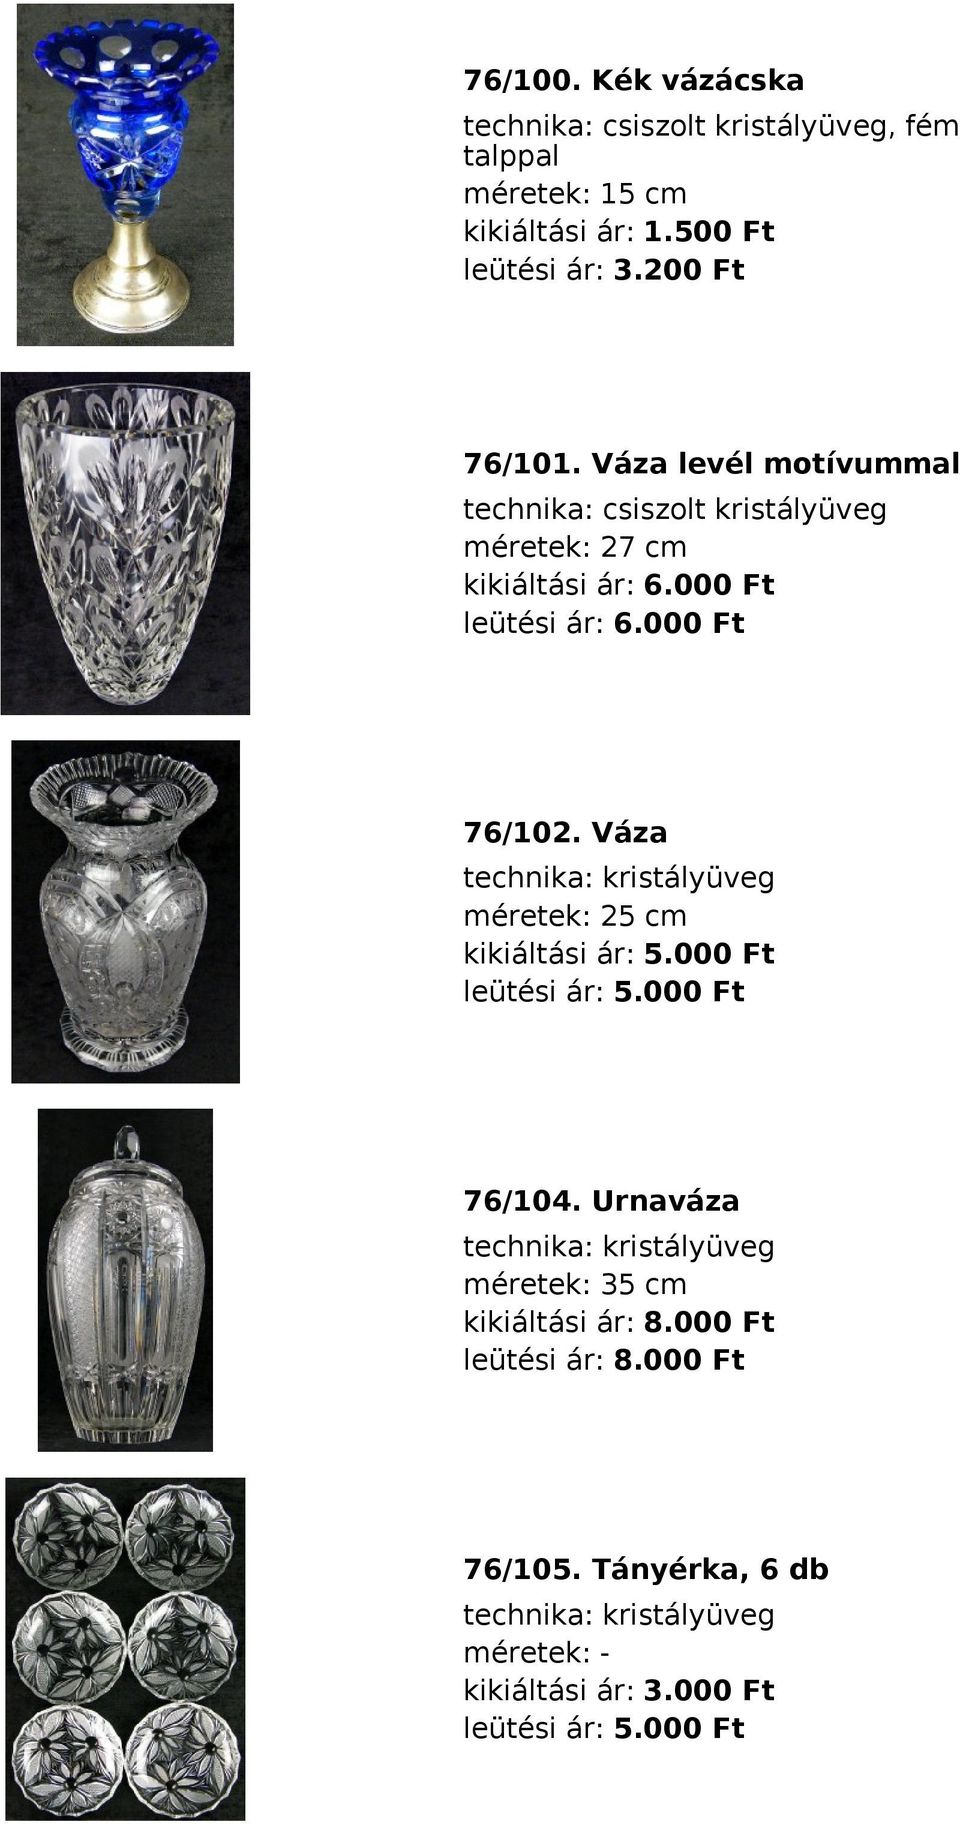 Váza technika: kristályüveg méretek: 25 cm kikiáltási ár: 5.000 Ft leütési ár: 5.000 Ft 76/104.